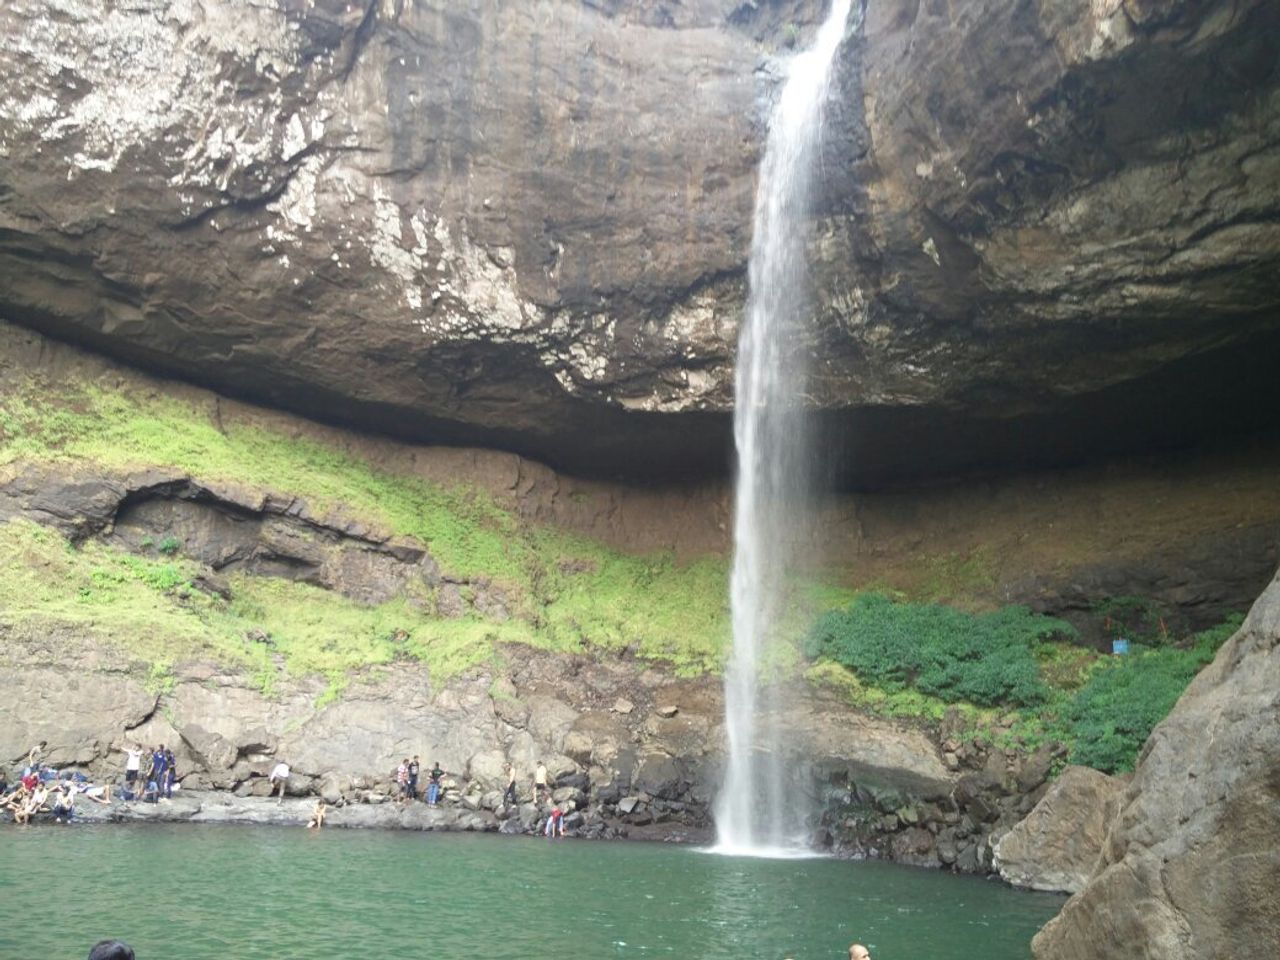 Descubre la belleza intocada de la cascada de Pimpilala en Tena, Ecuador.